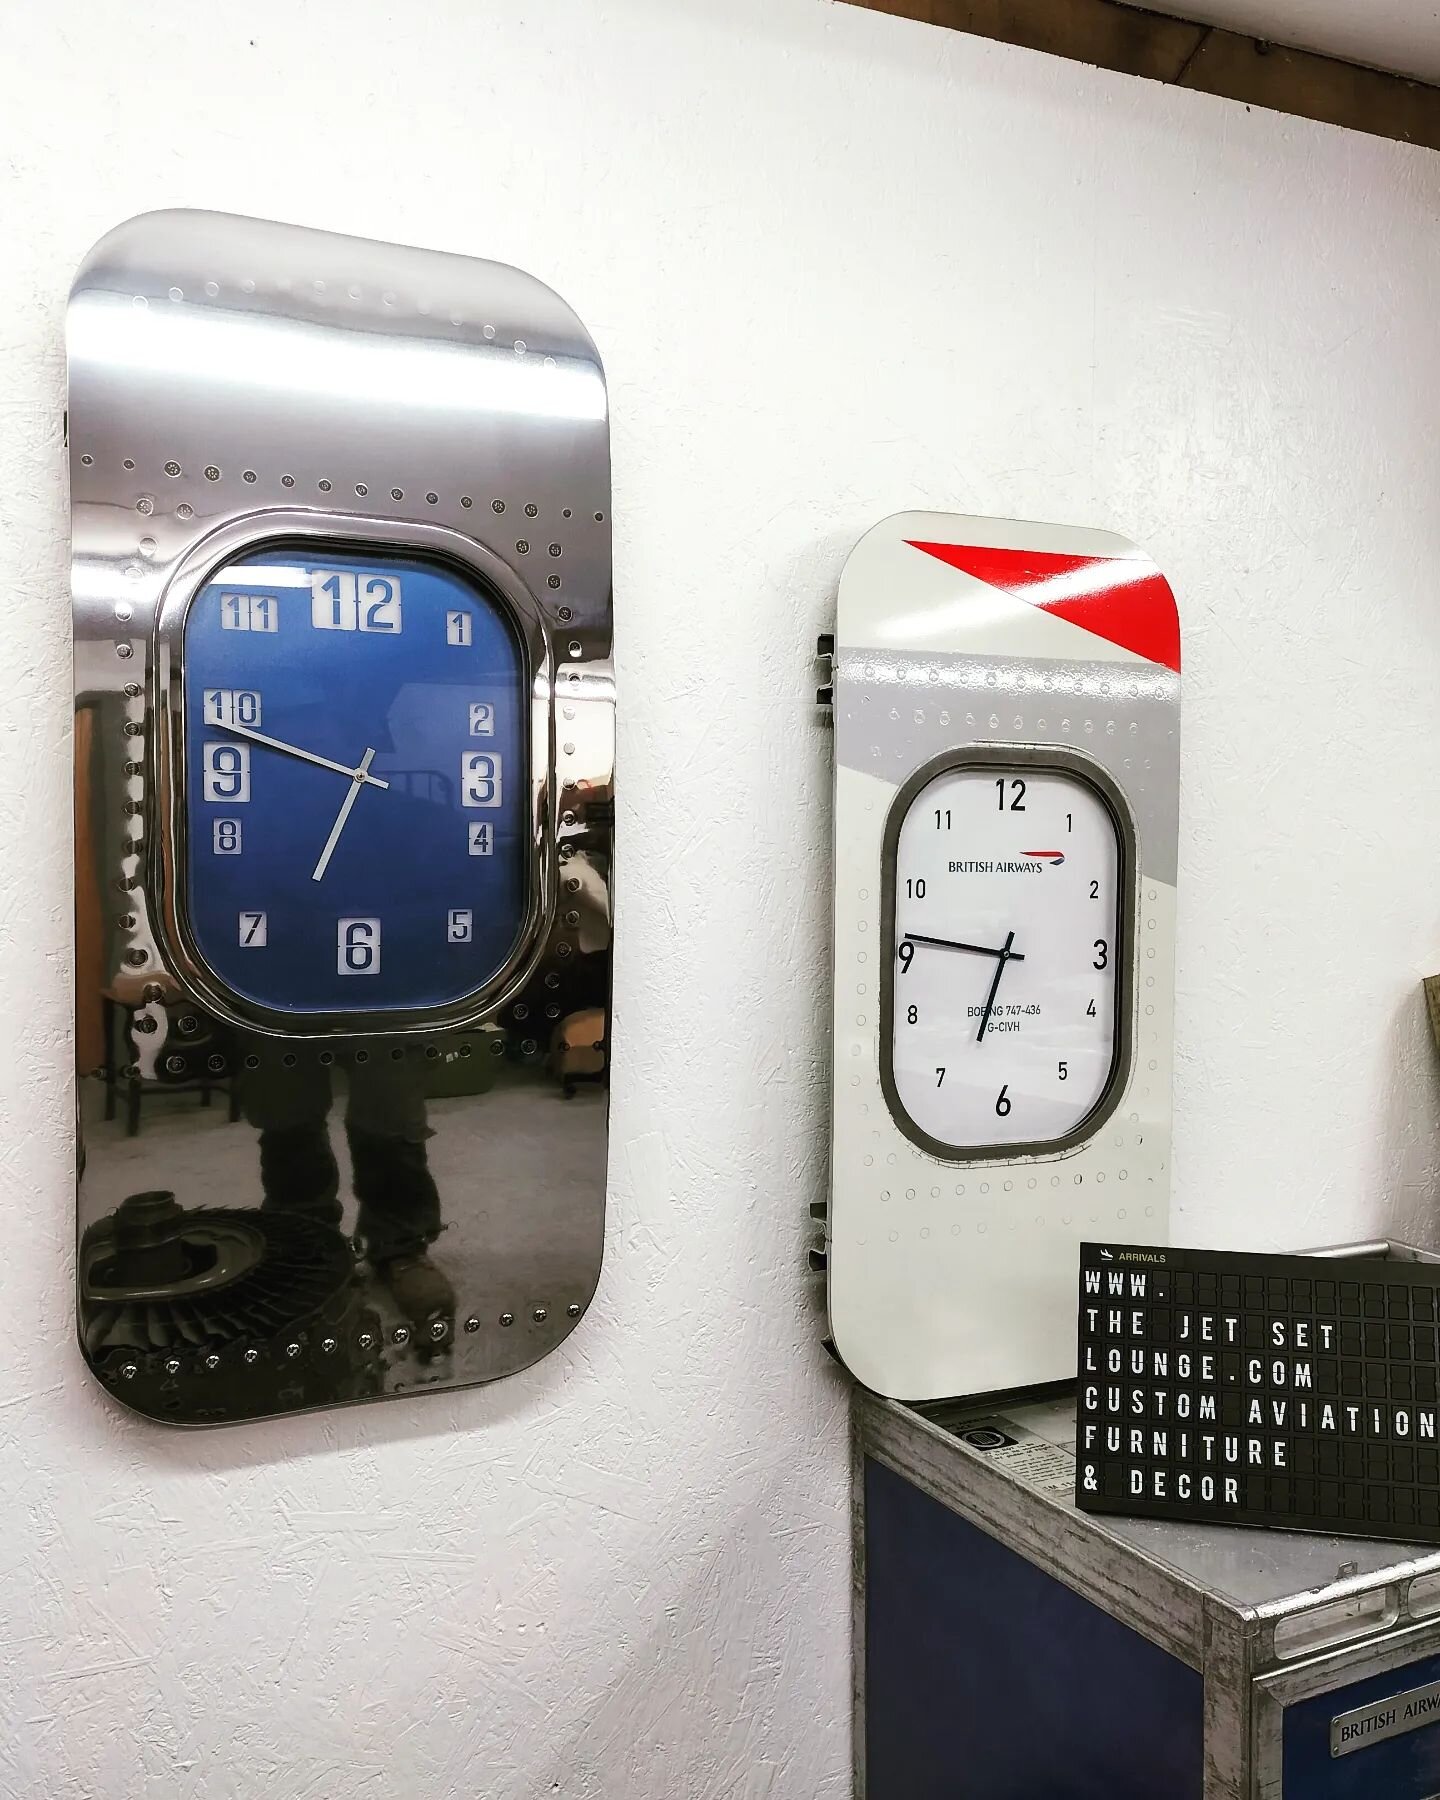 Made to order and customisable Boeing clocks made from genuine plane windows.
#b747 #b777 #aviation #interior #boeing #mancave #britishairways #queenoftheskies #aviationdecor #speedbird #largewallclock #largeclock #uniquegifts #pilot #cabincrew #inte